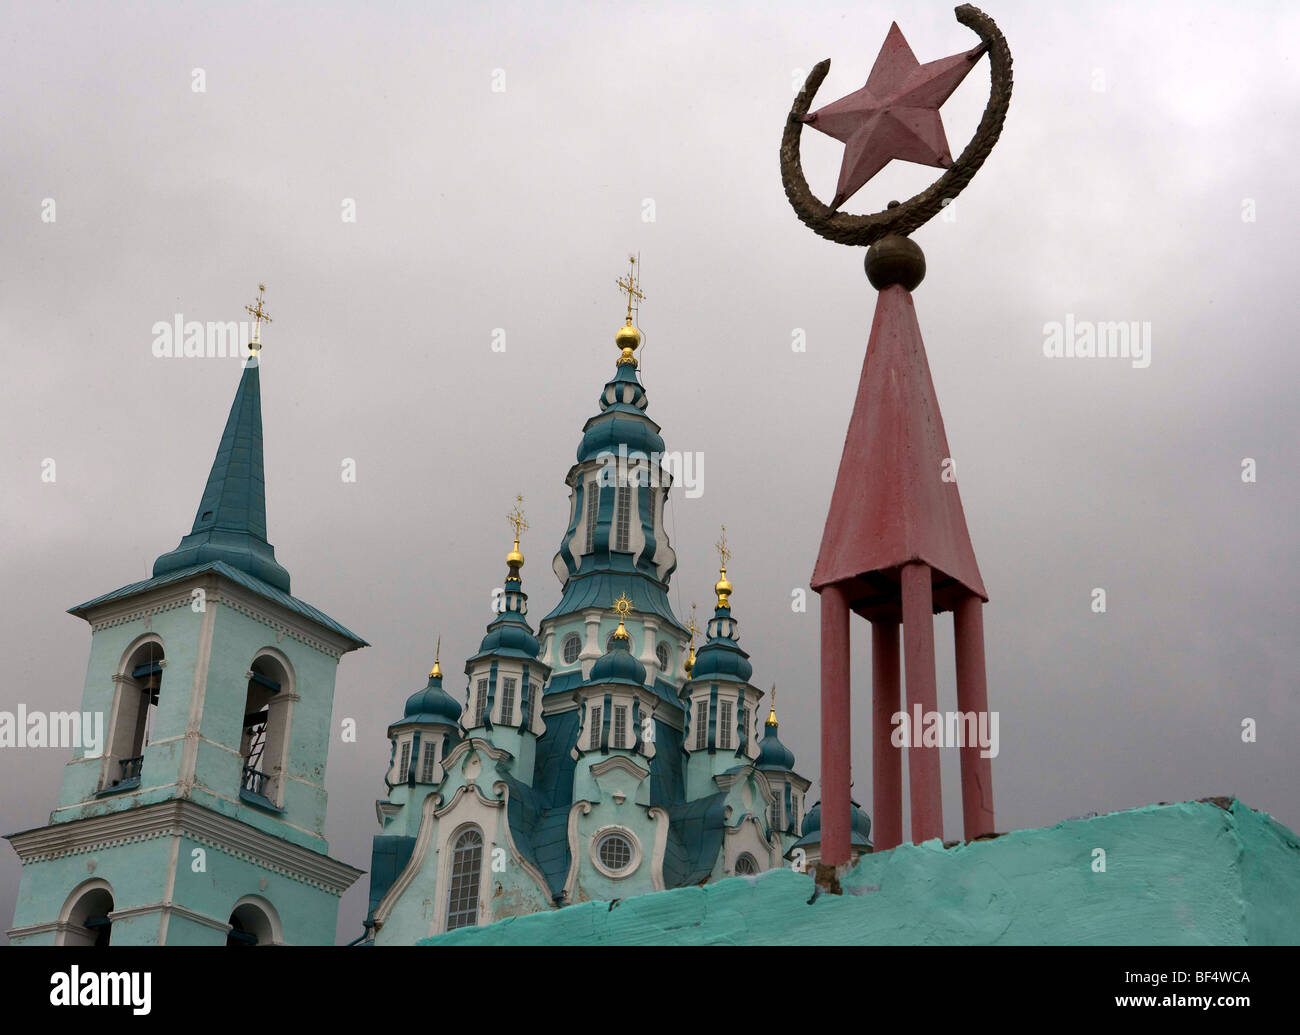 Russisch-orthodoxe Kirche mit Hammer und sowjetische Star, Russland  Stockfotografie - Alamy